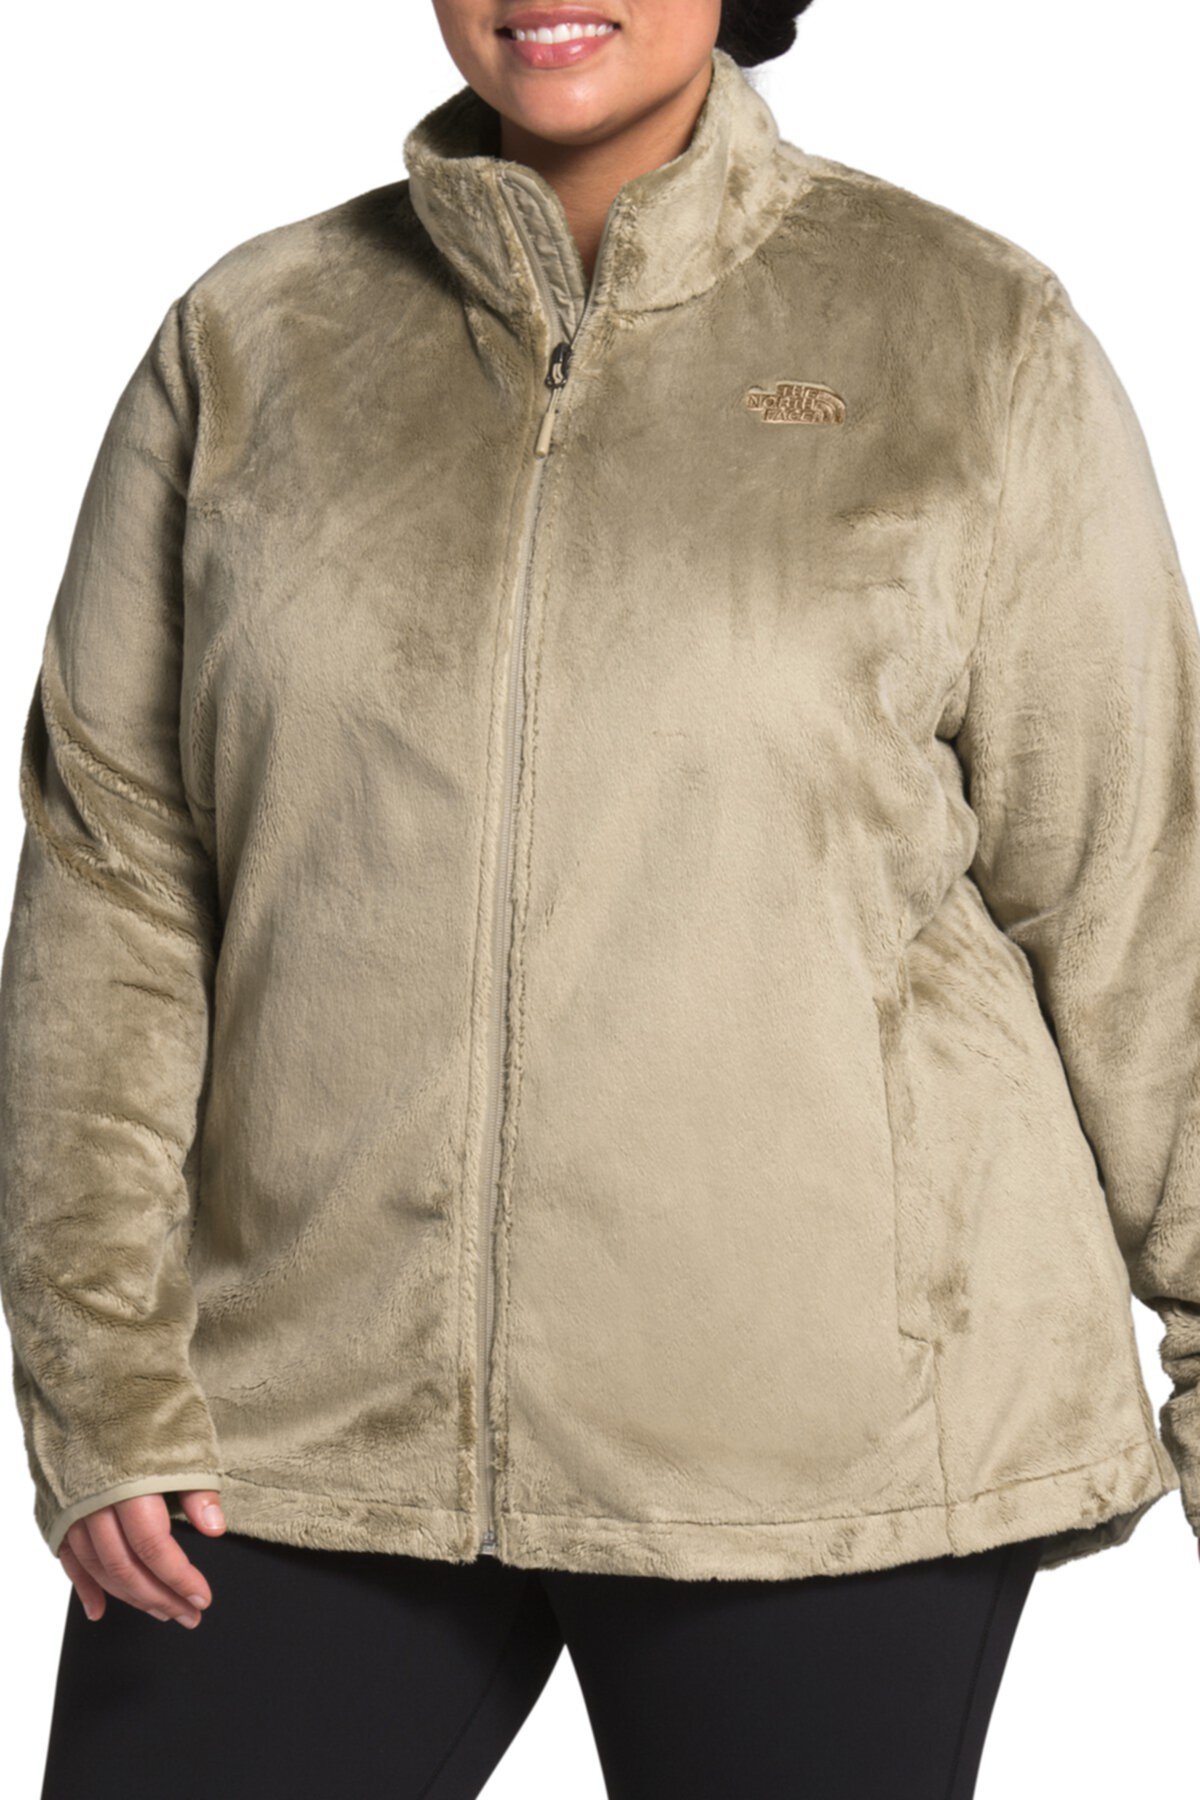 Плюшевая флисовая куртка Osito (большие размеры) The North Face